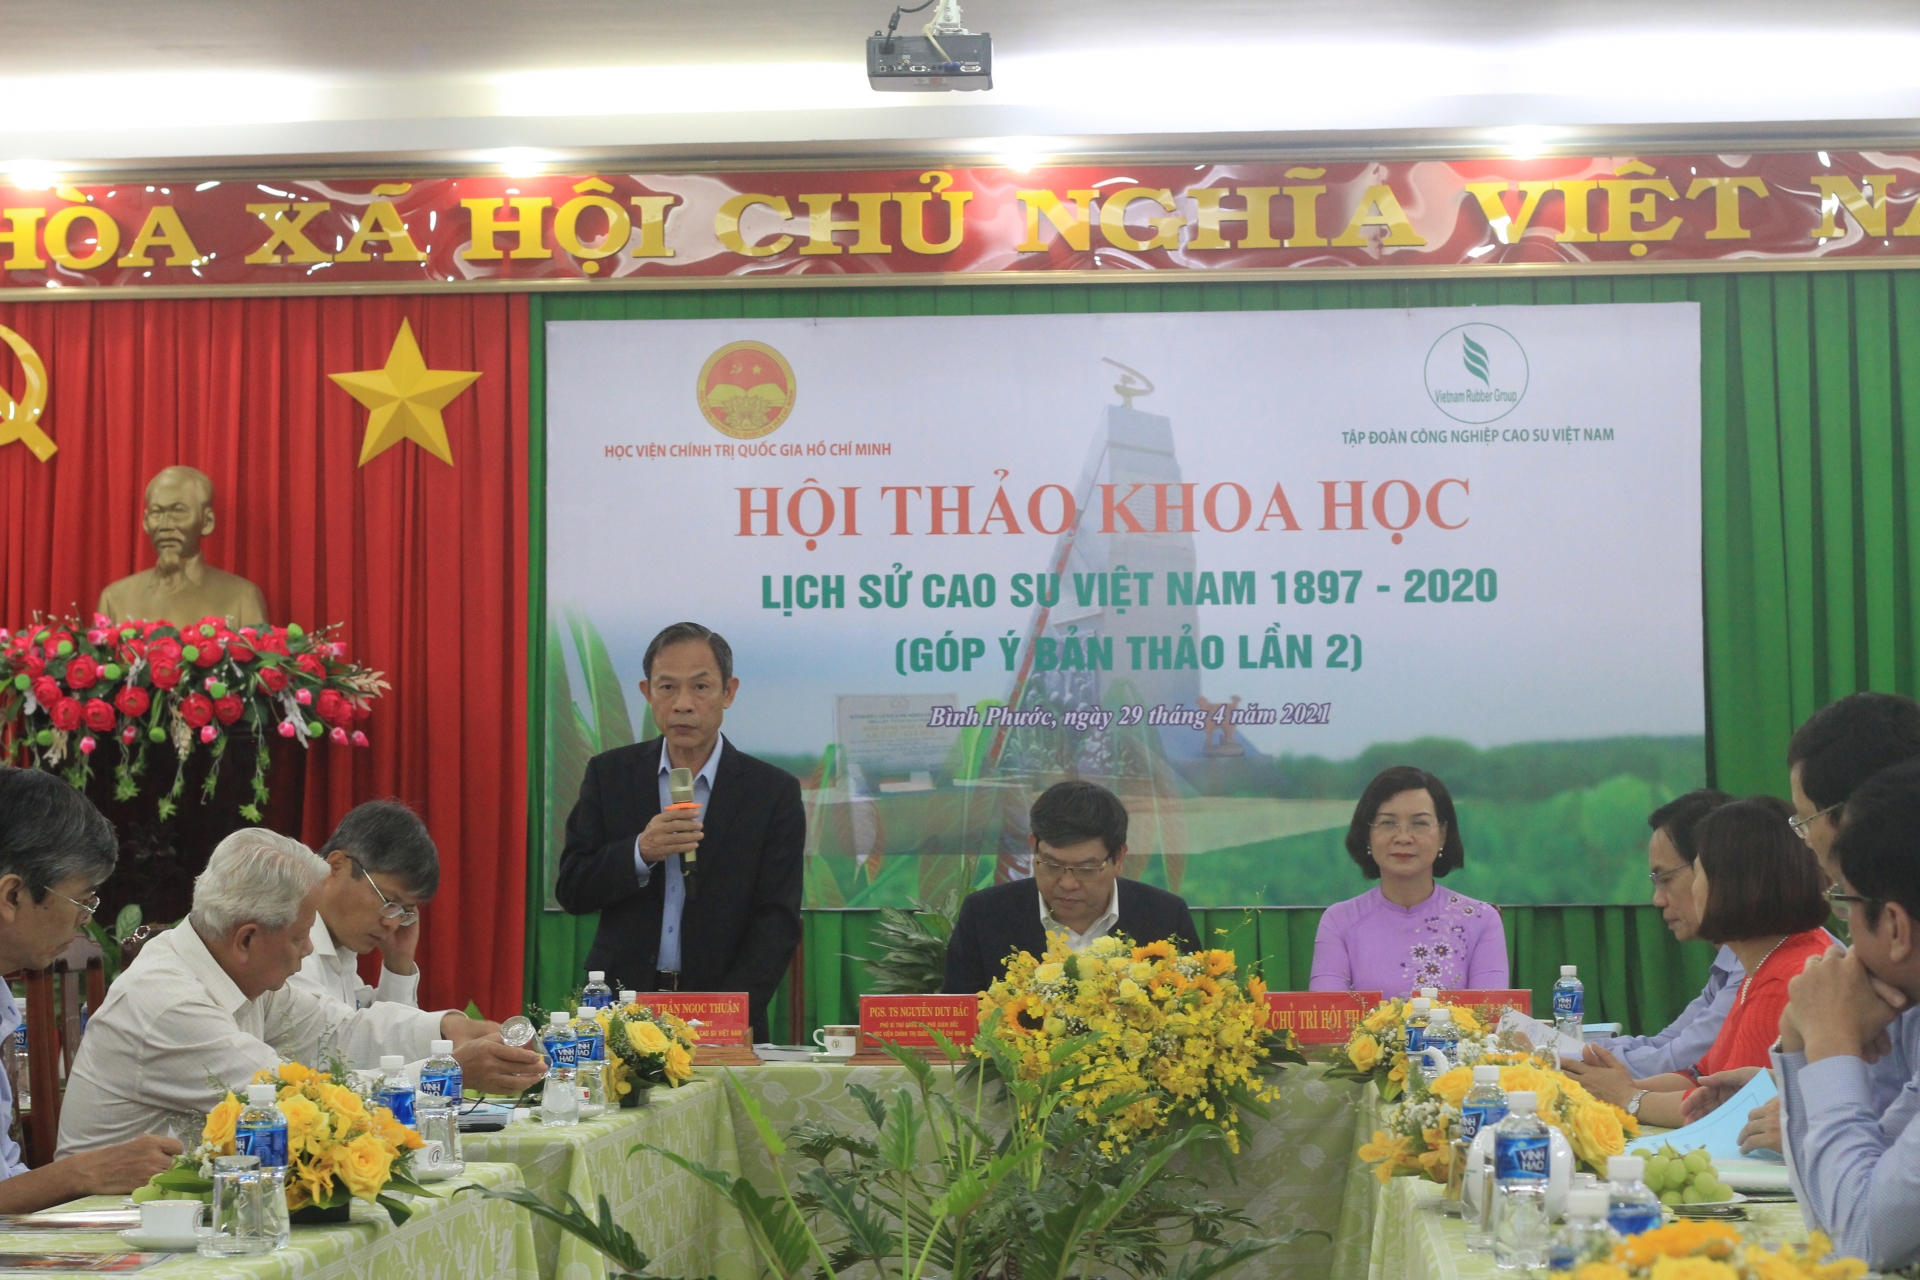 Tự hào là công nhân Cao su được thể hiện qua tập sách “Lịch sử Cao su Việt Nam”